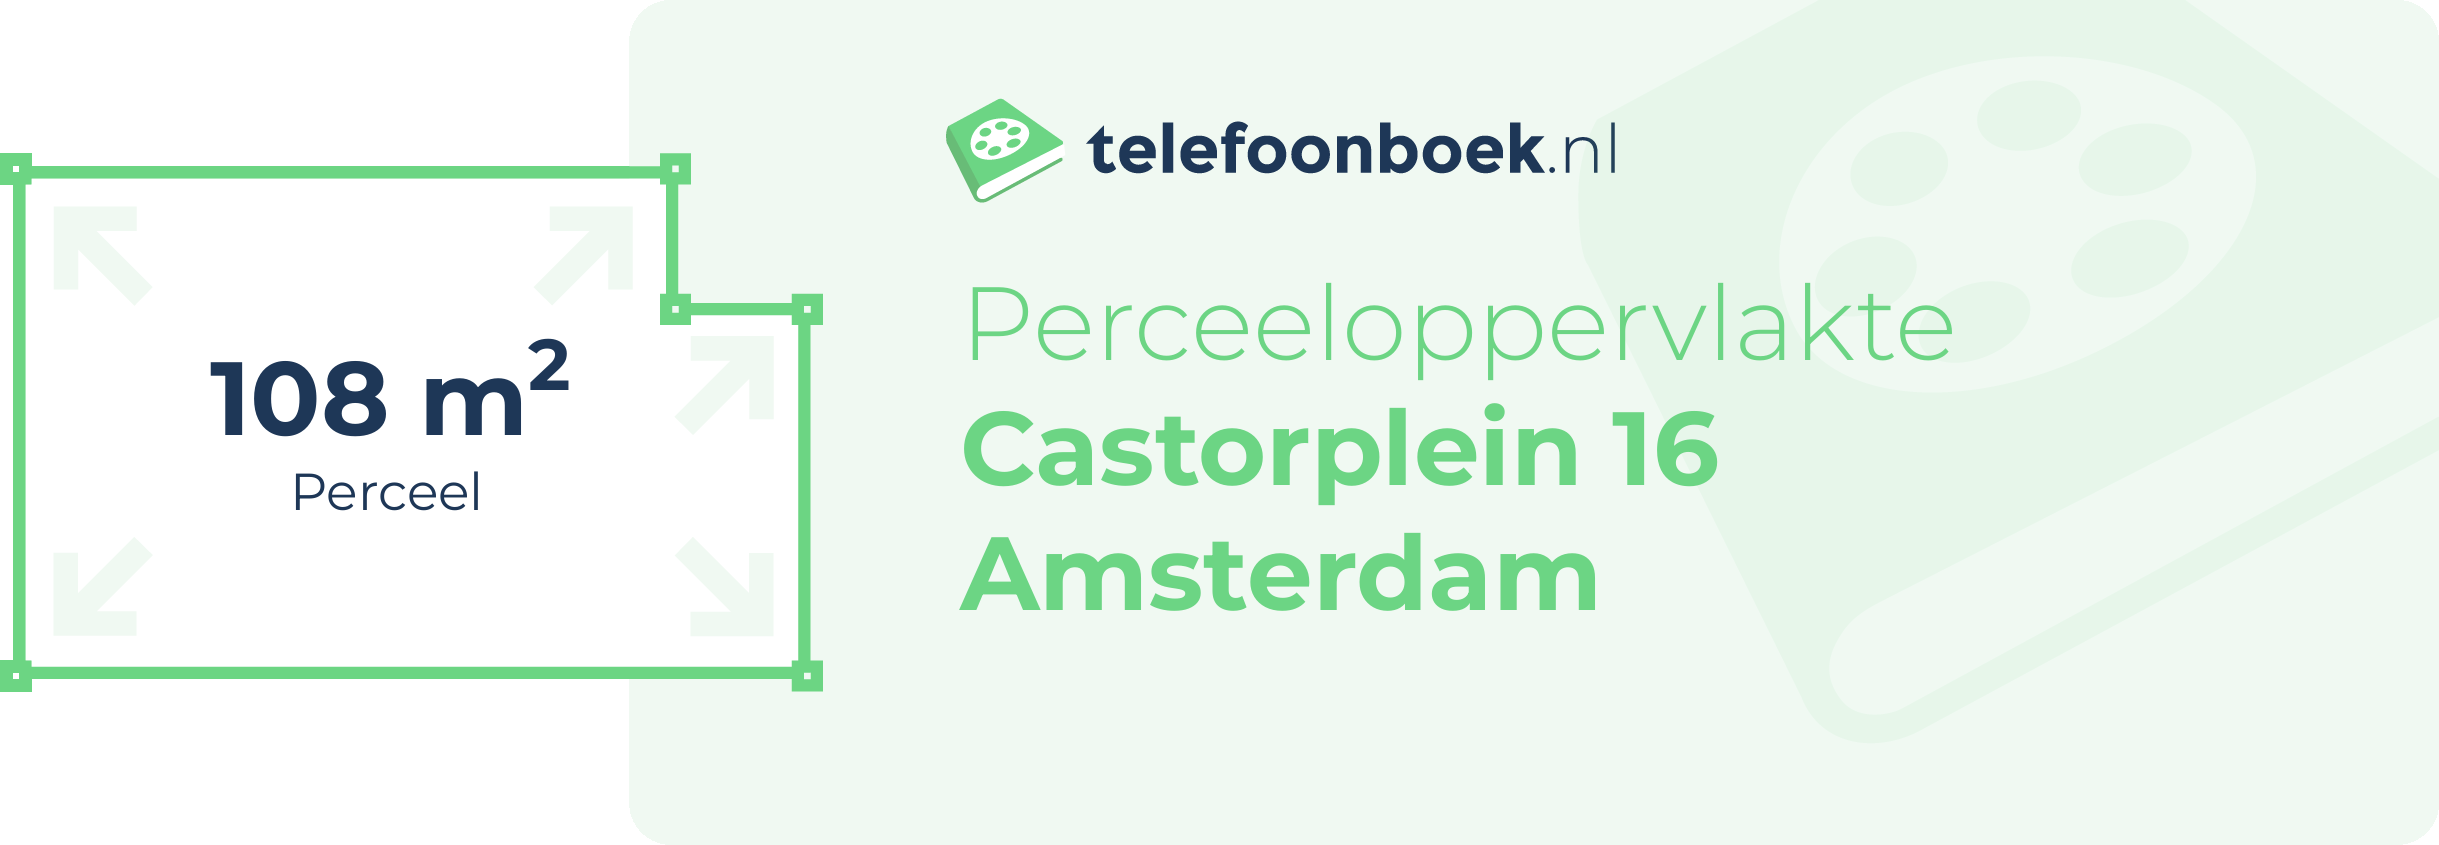 Perceeloppervlakte Castorplein 16 Amsterdam